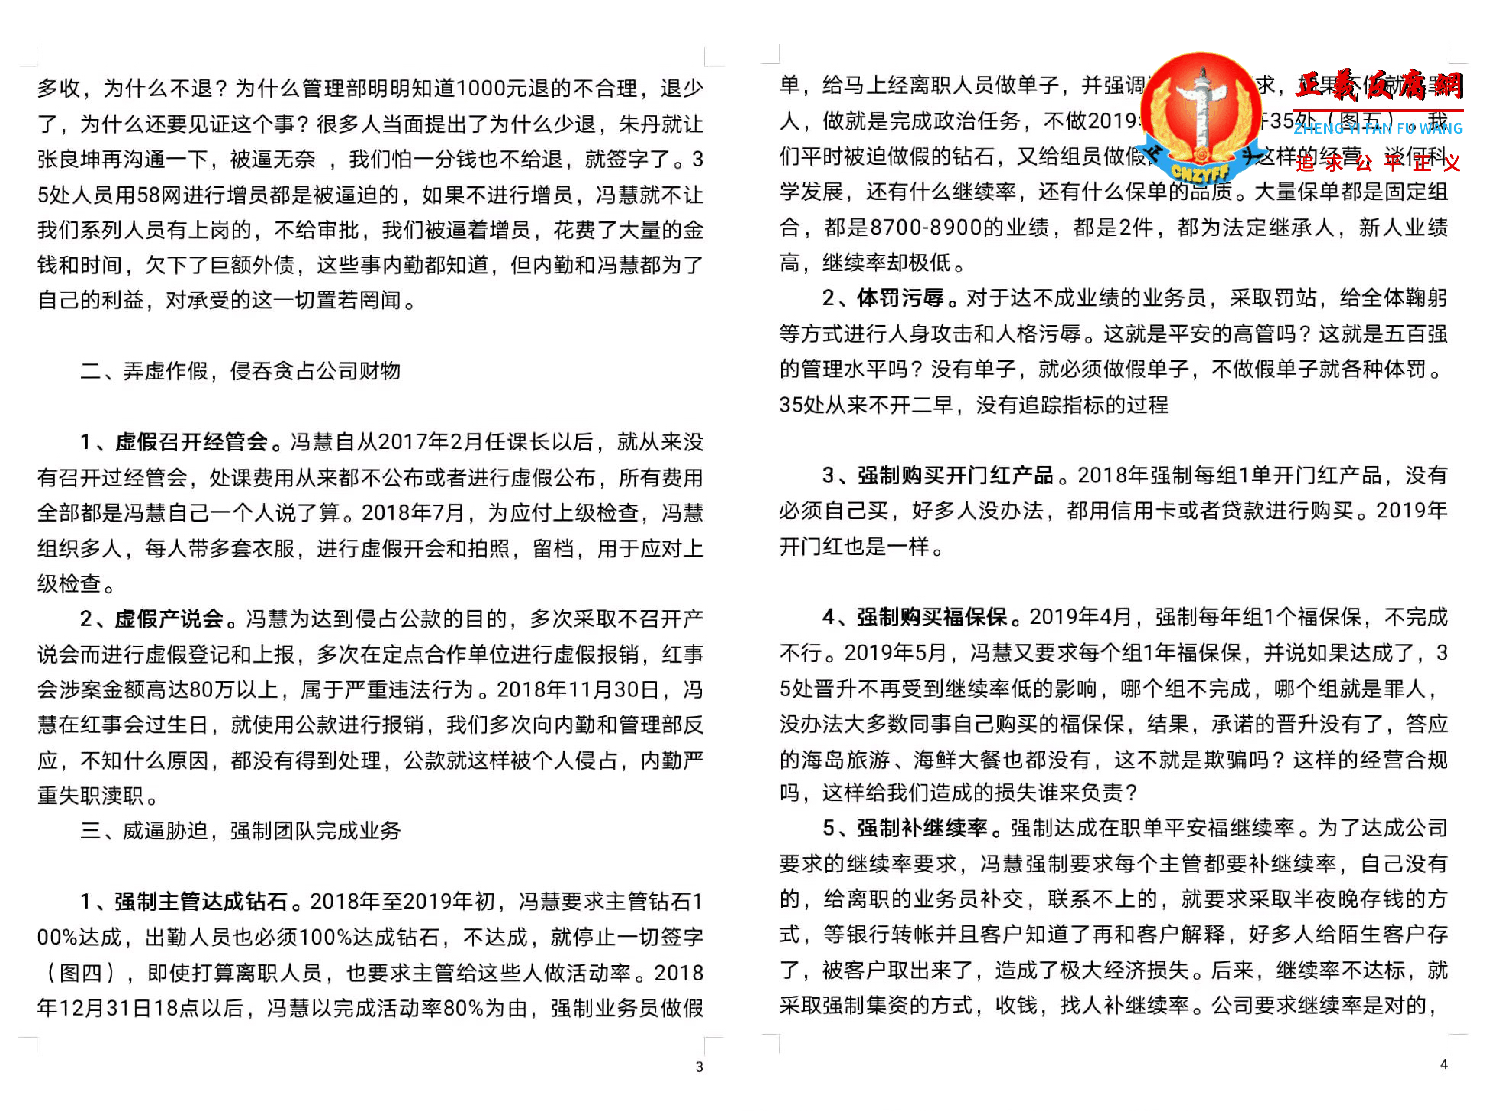 关于平安保险黑龙江分公司违法事实举报第三、四页合成.png